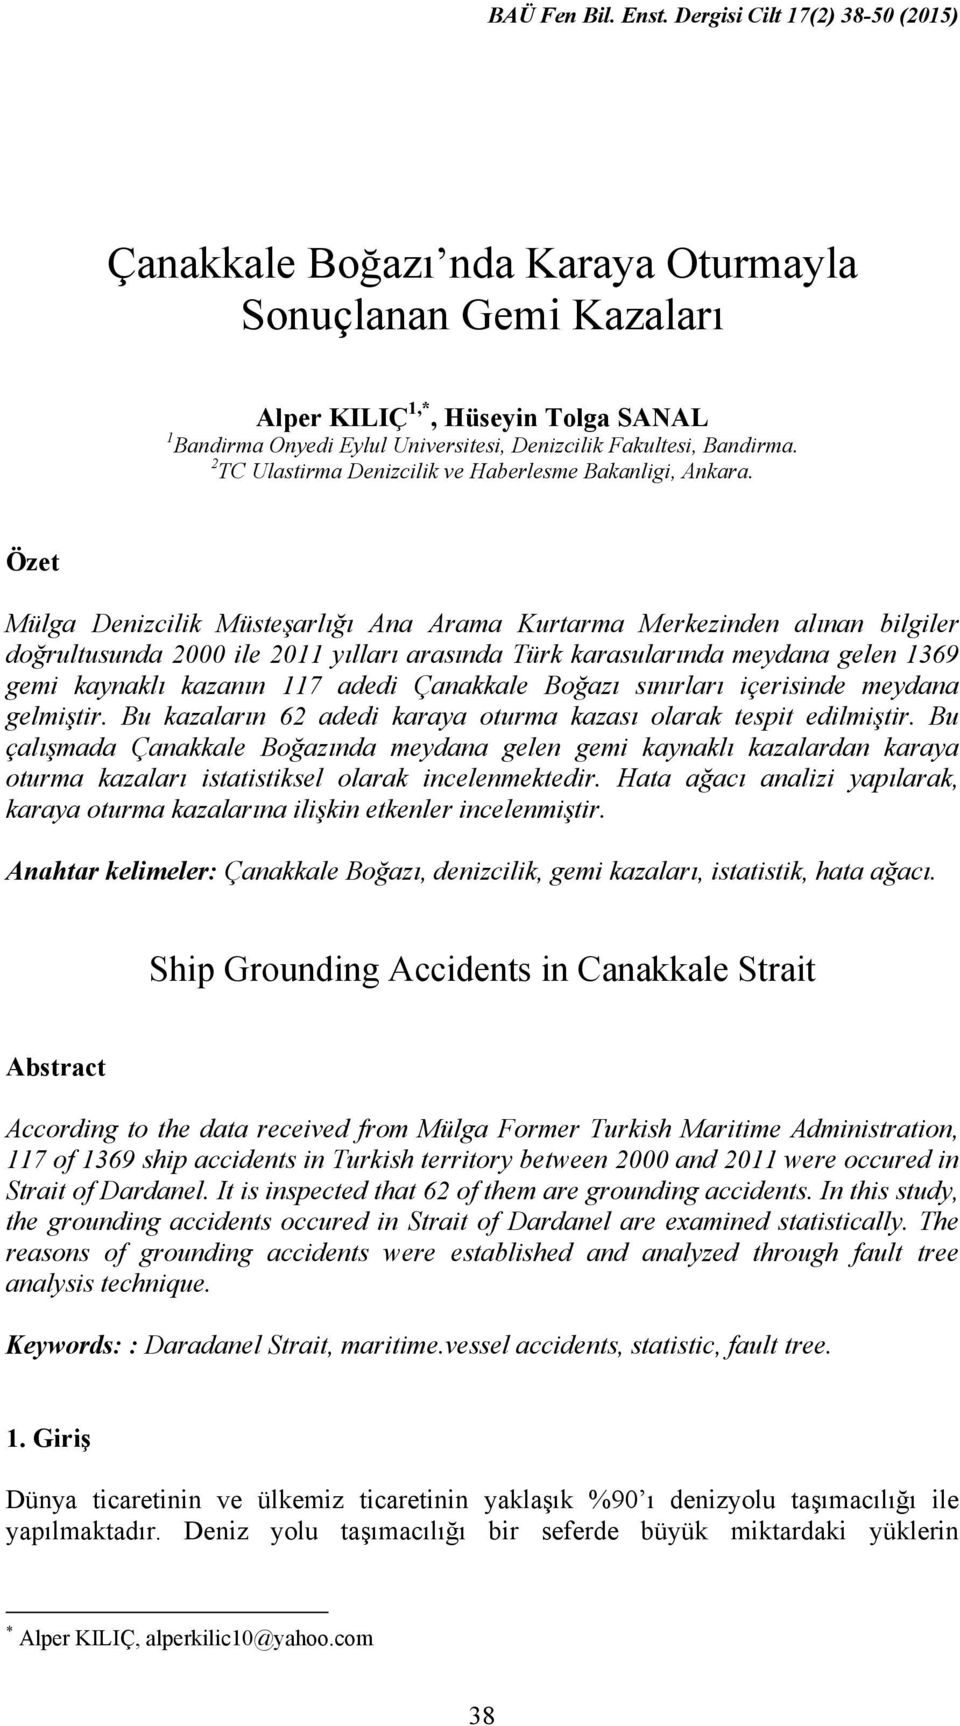 Özet Mülga Denizcilik Müsteşarlığı Ana Arama Kurtarma Merkezinden alınan bilgiler doğrultusunda 2000 ile 2011 yılları arasında Türk karasularında meydana gelen 1369 gemi kaynaklı kazanın 117 adedi